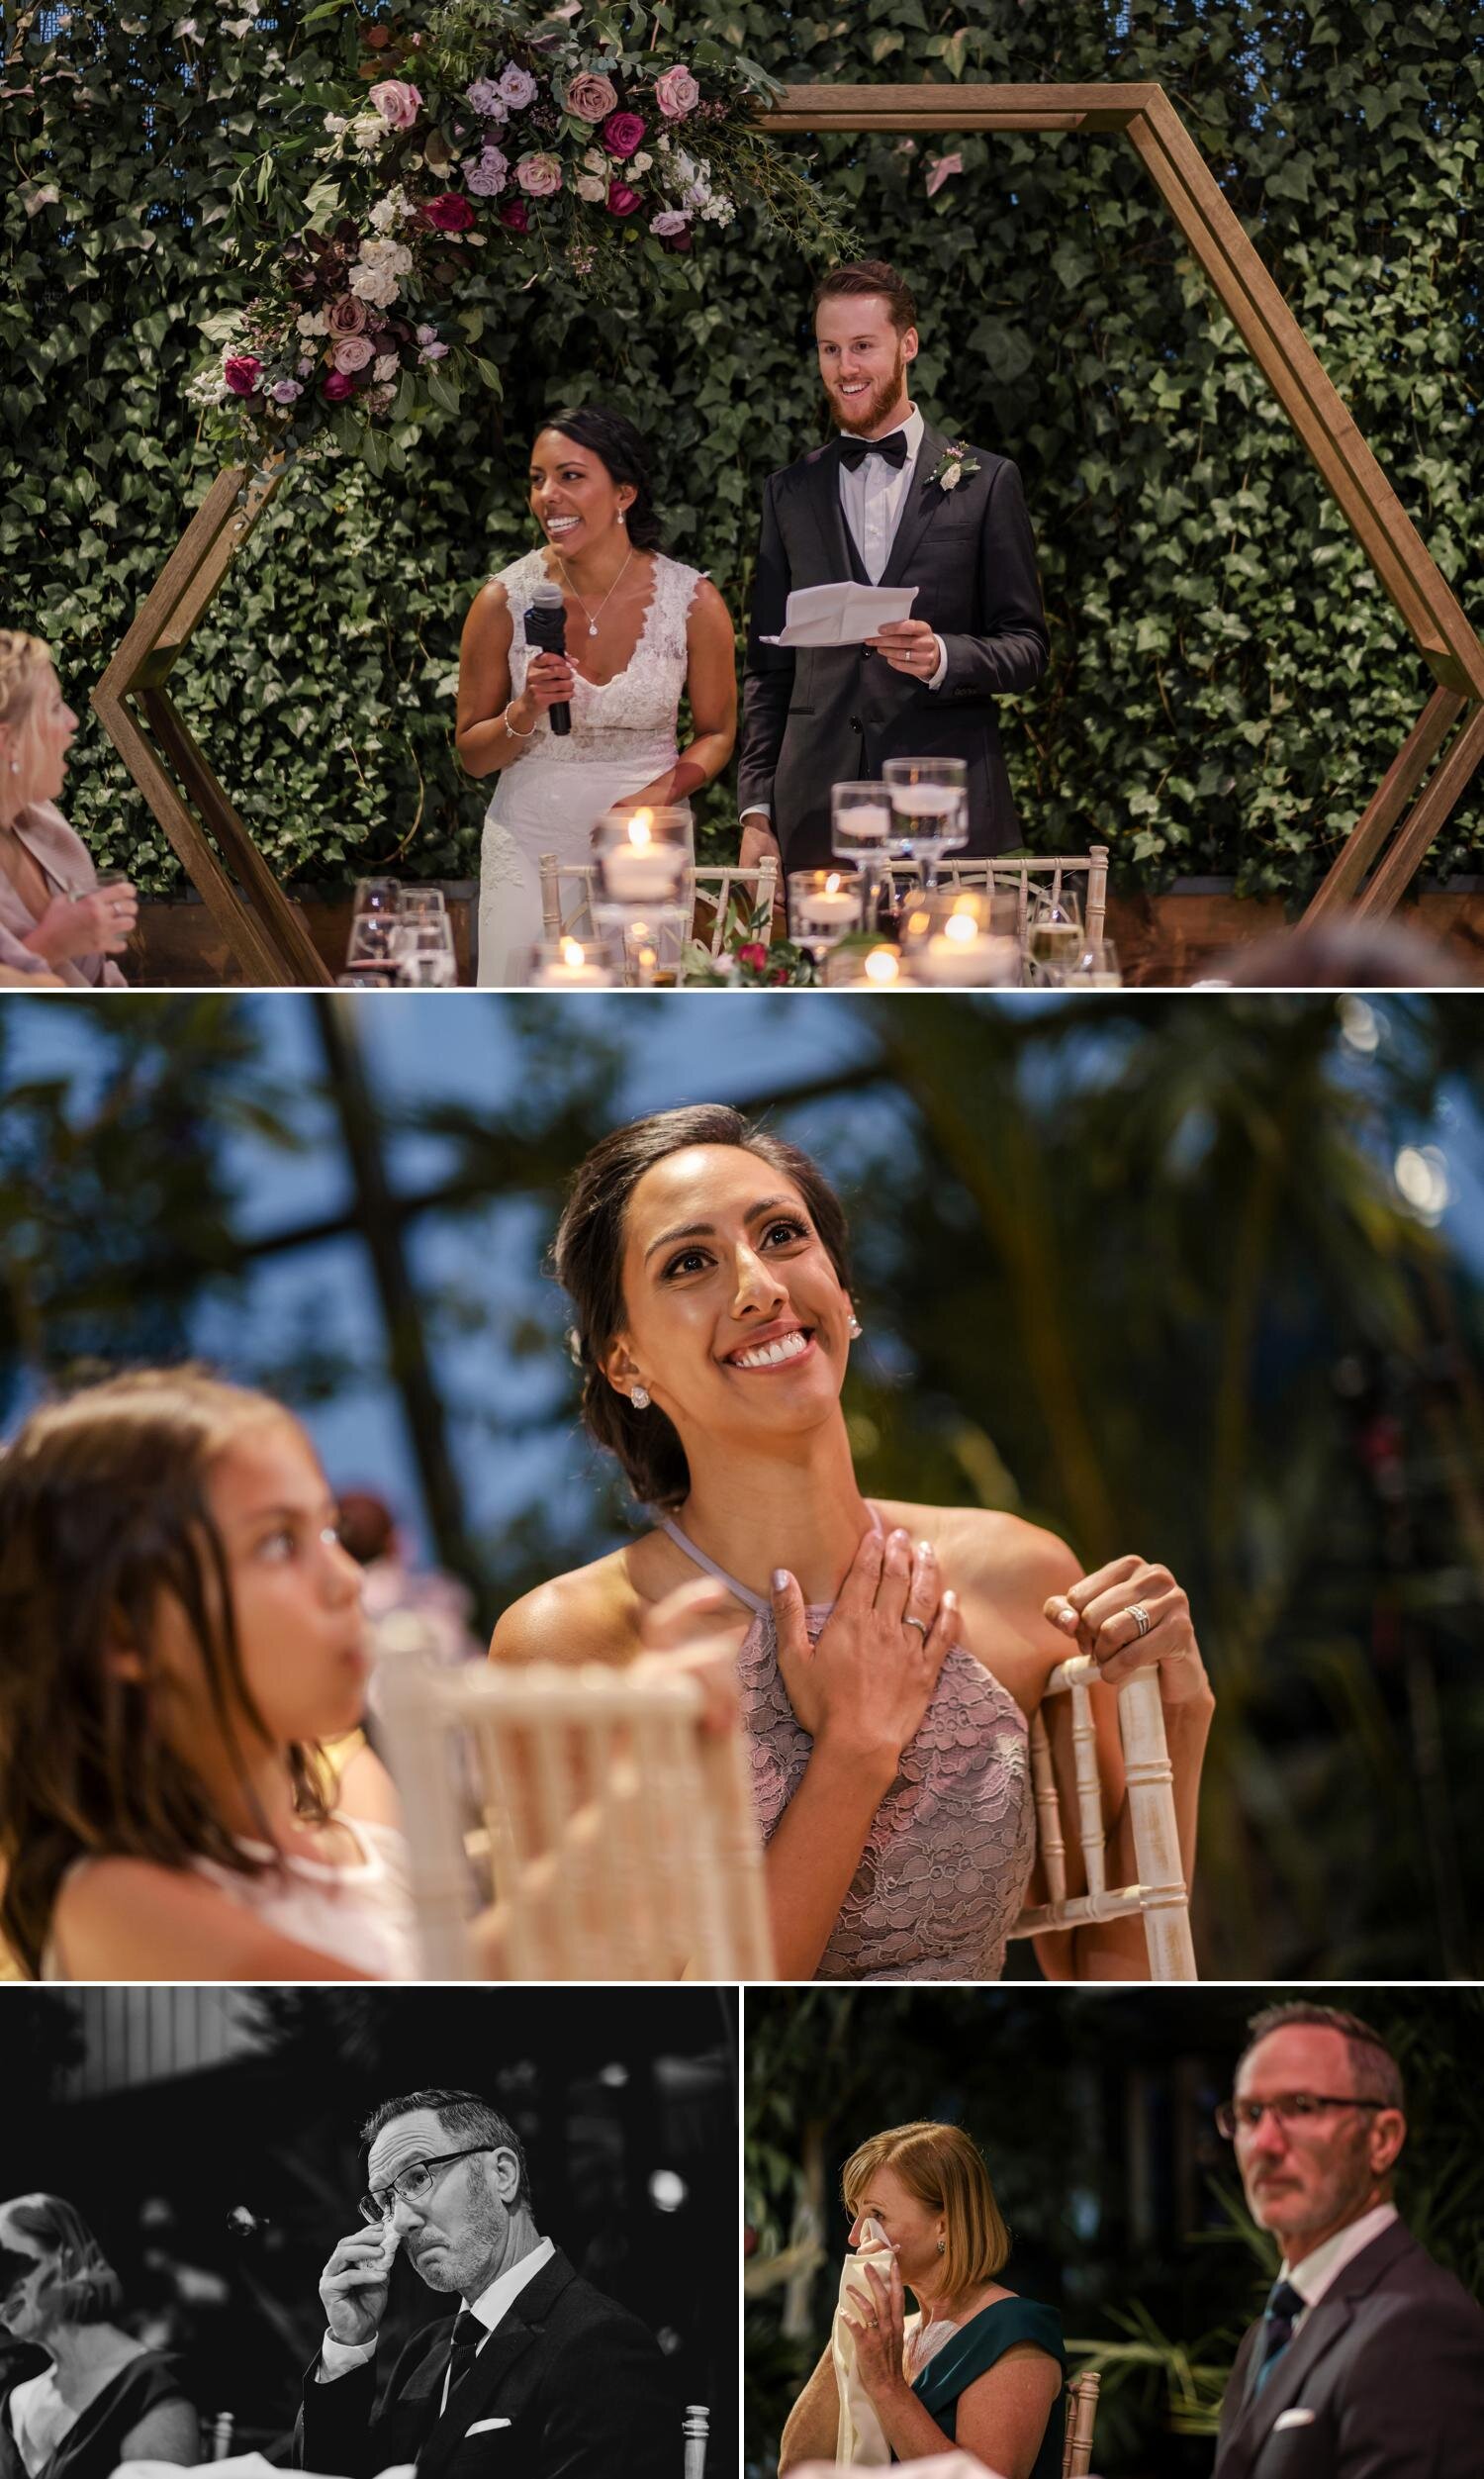 photos from an aquatopia wedding reception